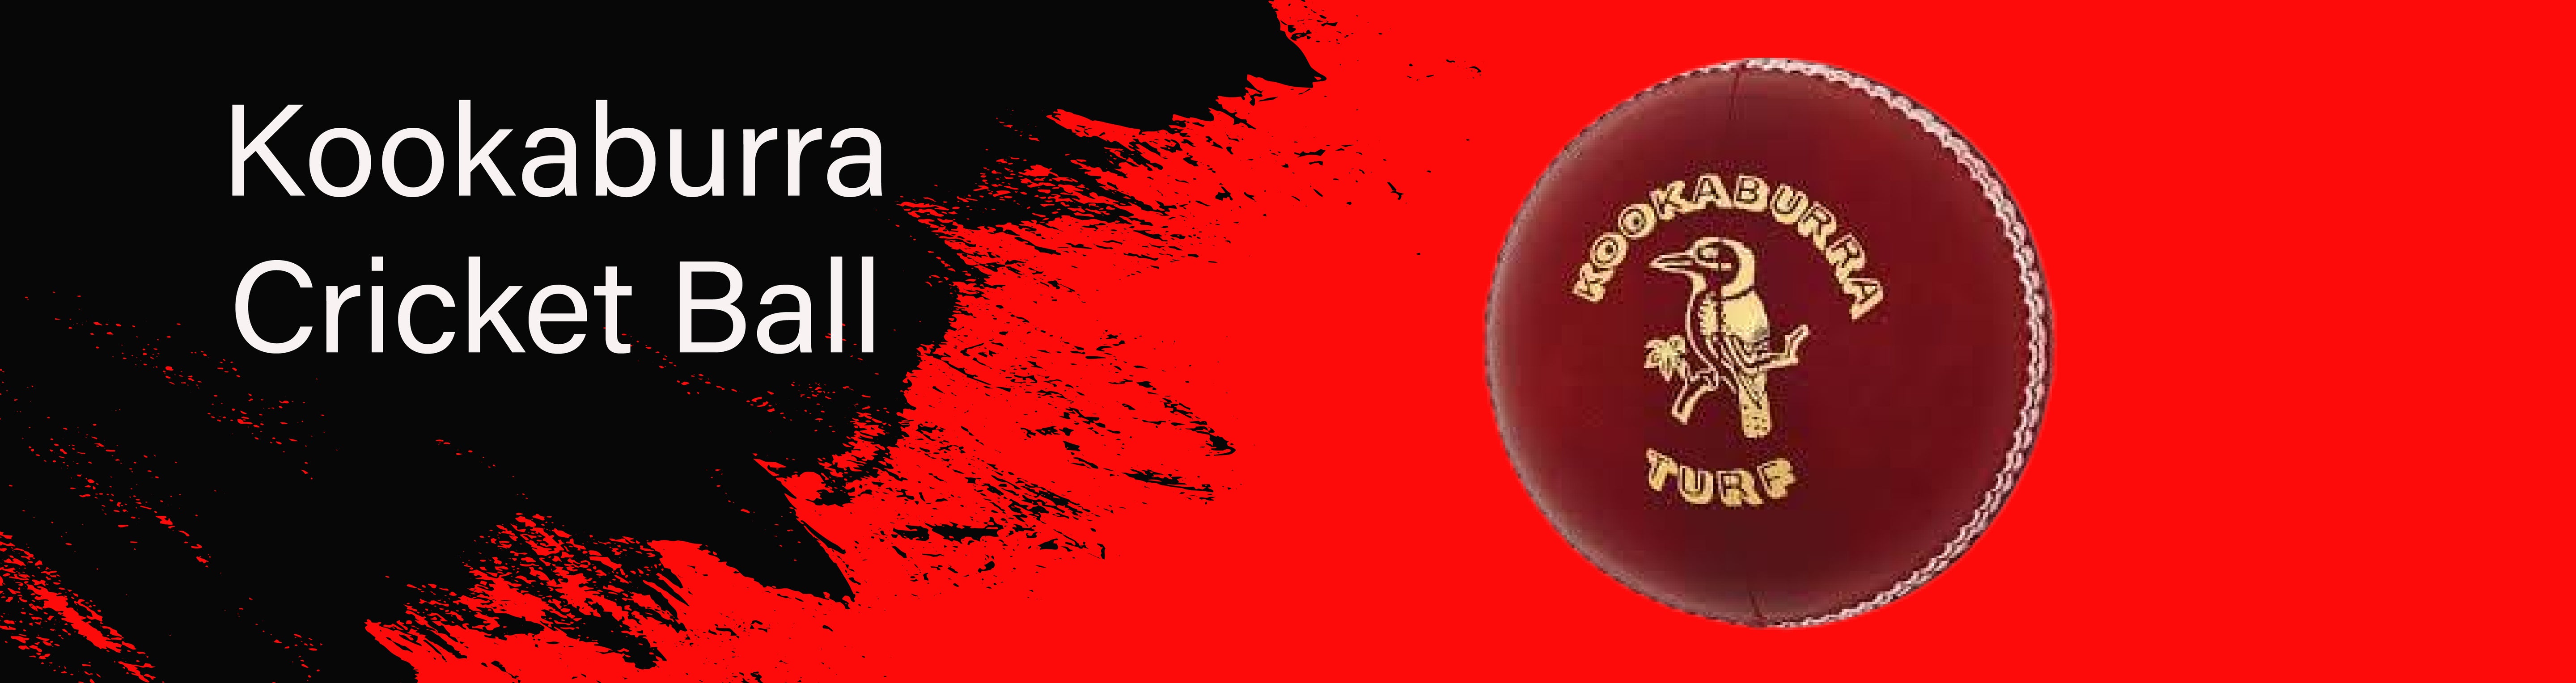 BALL - Kookaburra Cricket Ball